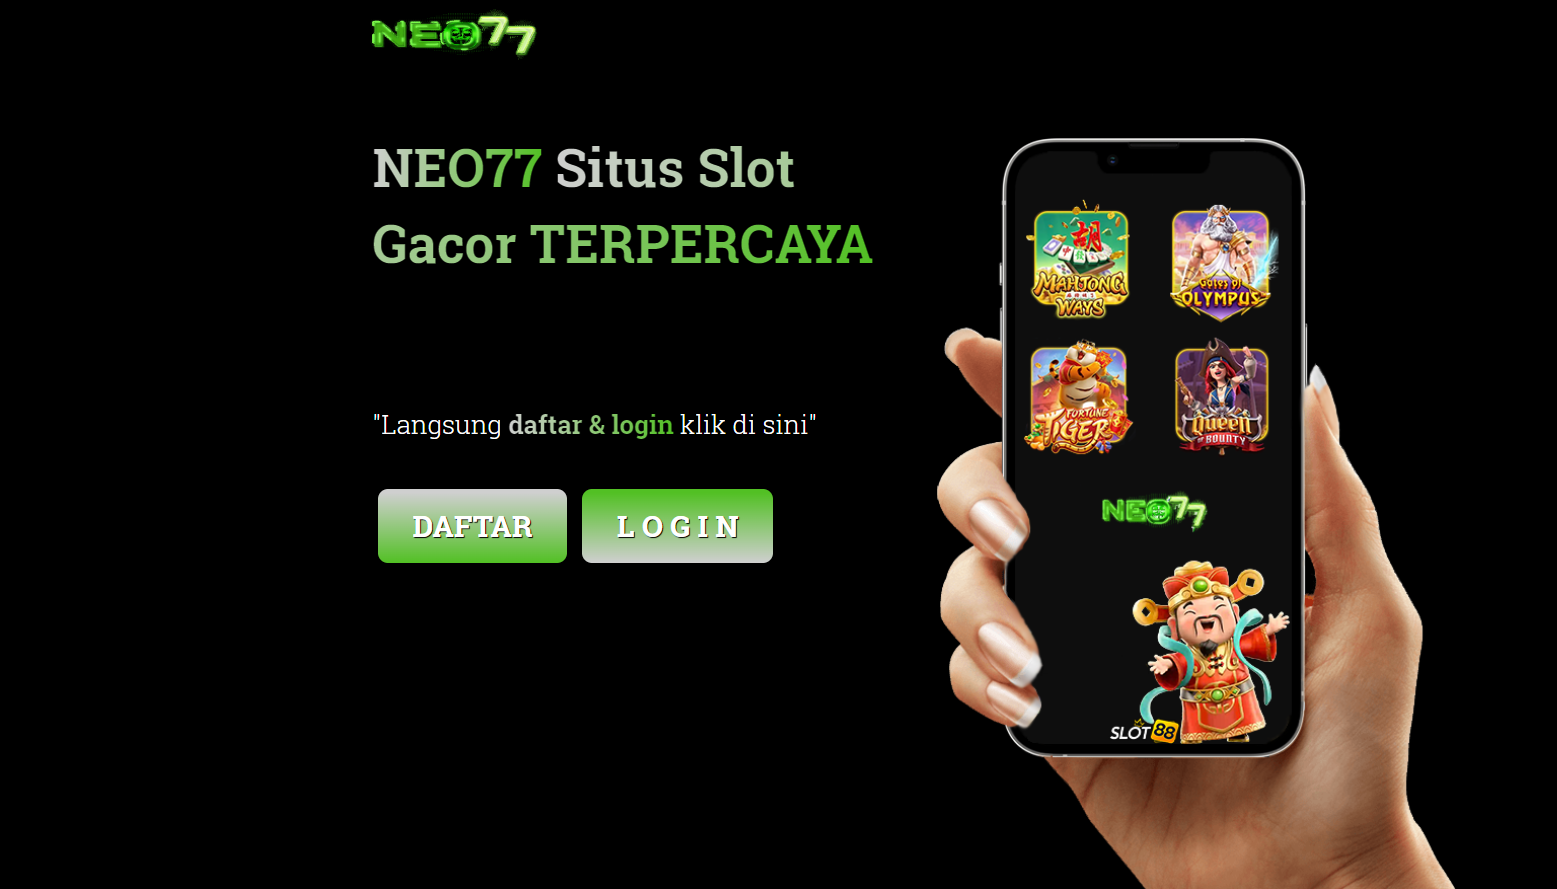 neo77, neo 77, rtp neo77, slot neo77, neo77 gacor, daftar neo77, login neo77, official neo77, situs neo77, judi slot neo77, agen neo77, neo77 idnslots, neo77 terlengkap, neo77 terpercaya, neo77 winrate tinggi, neo77 slot gacor,